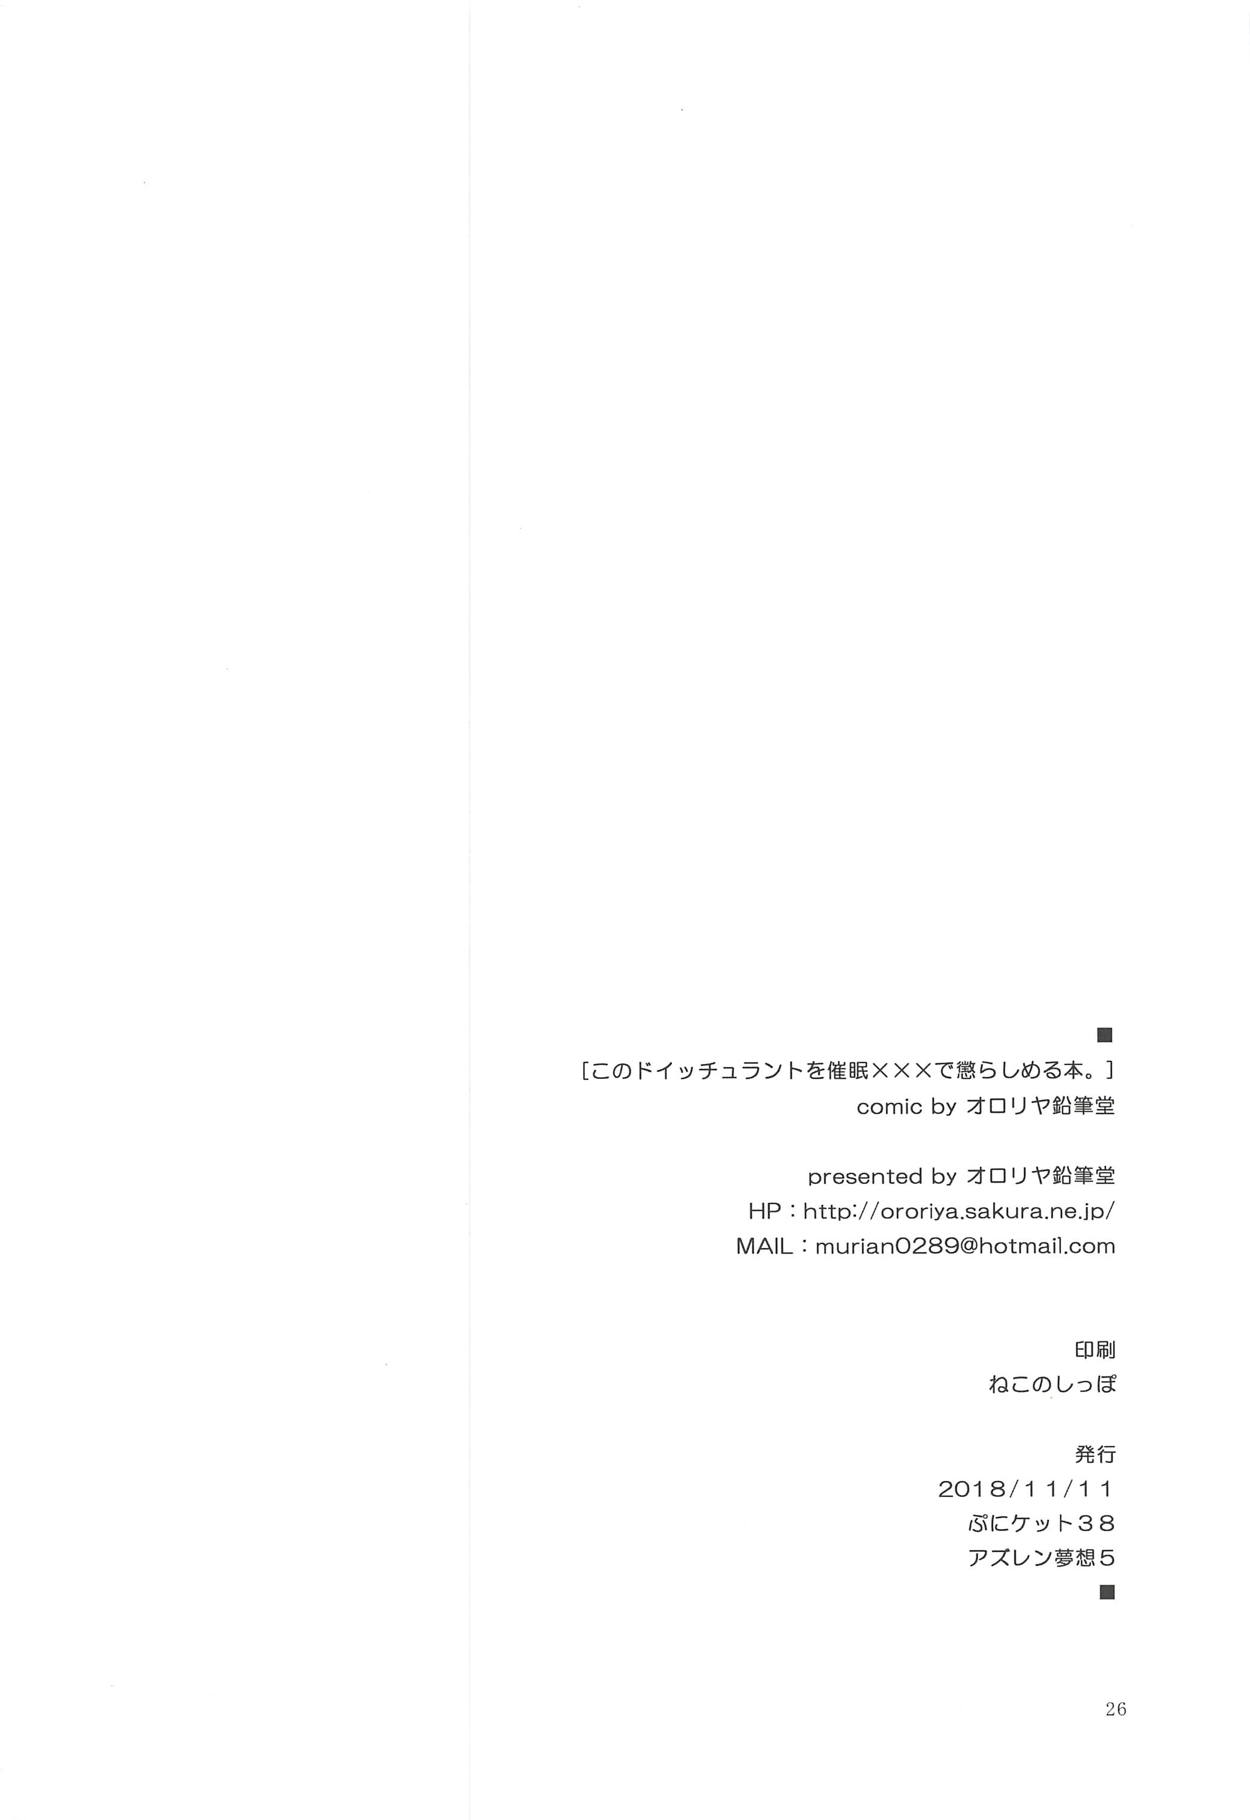 (アズレン夢想5) [オロリヤ鉛筆堂 (無有利安)] このドイッチュラントを催眠×××で懲らしめる本。 (アズールレーン)